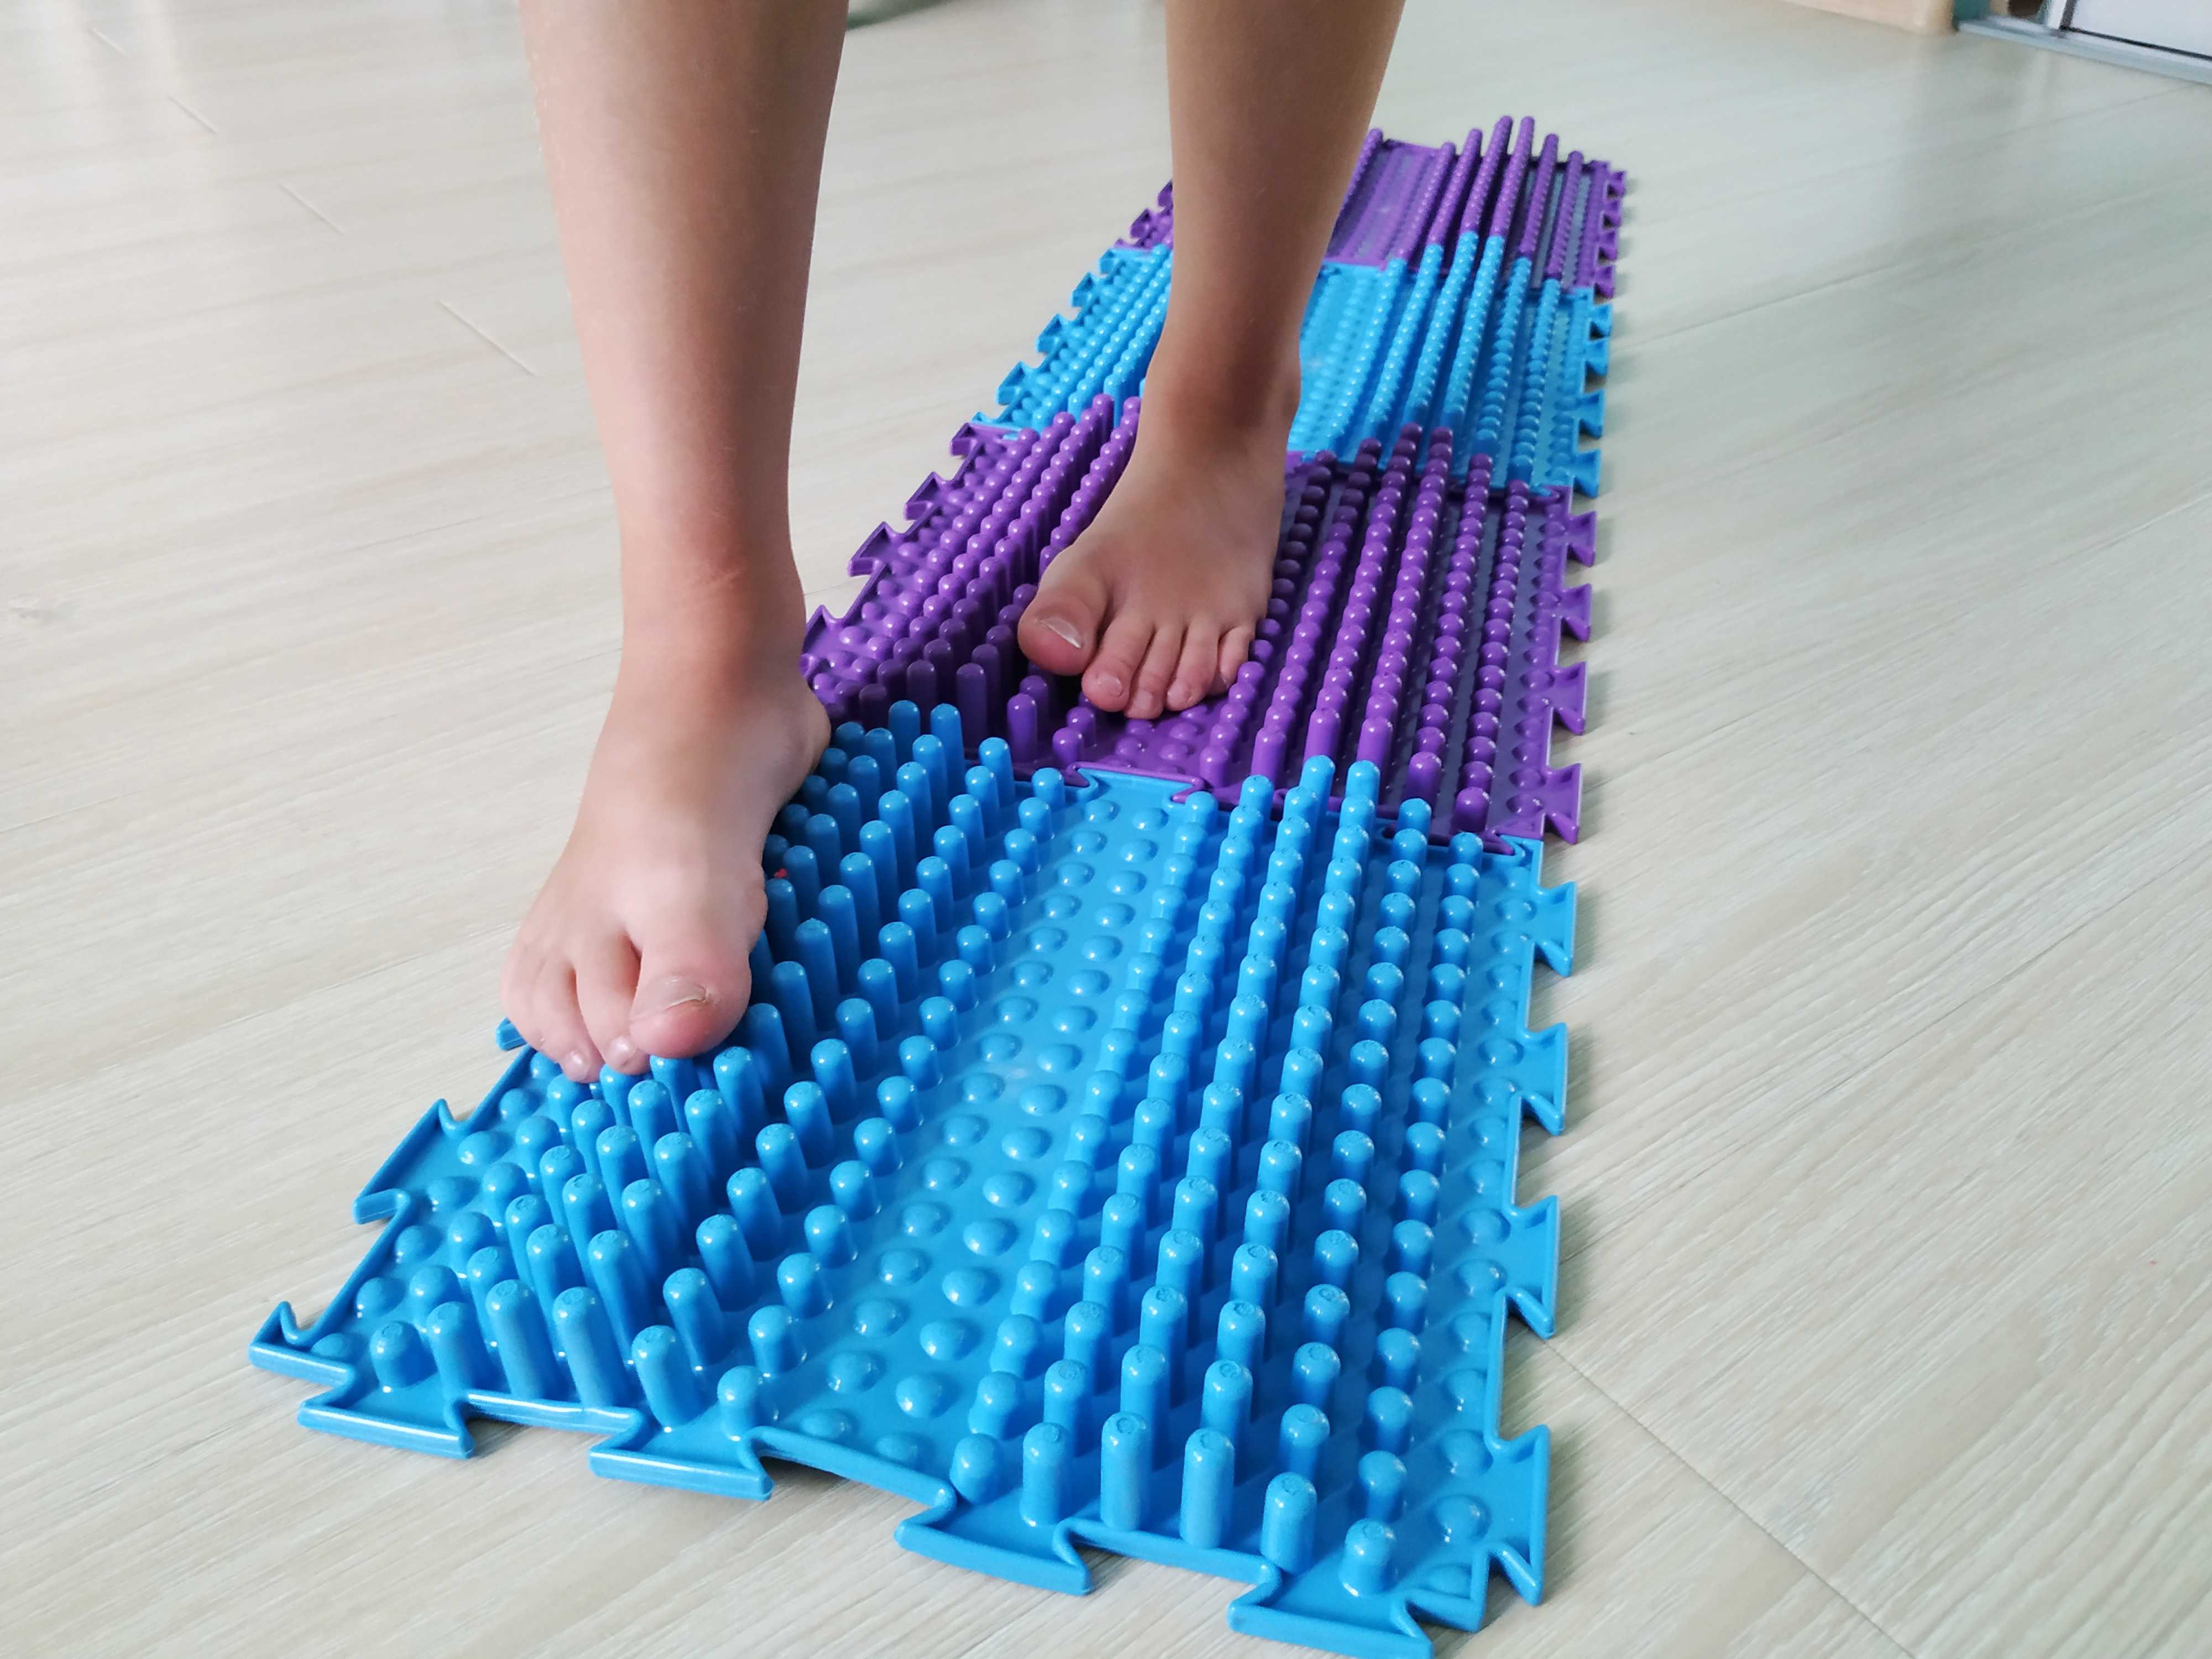 Использование ортопедического массажного коврика для профилактики и лечения плоскостопия у детей